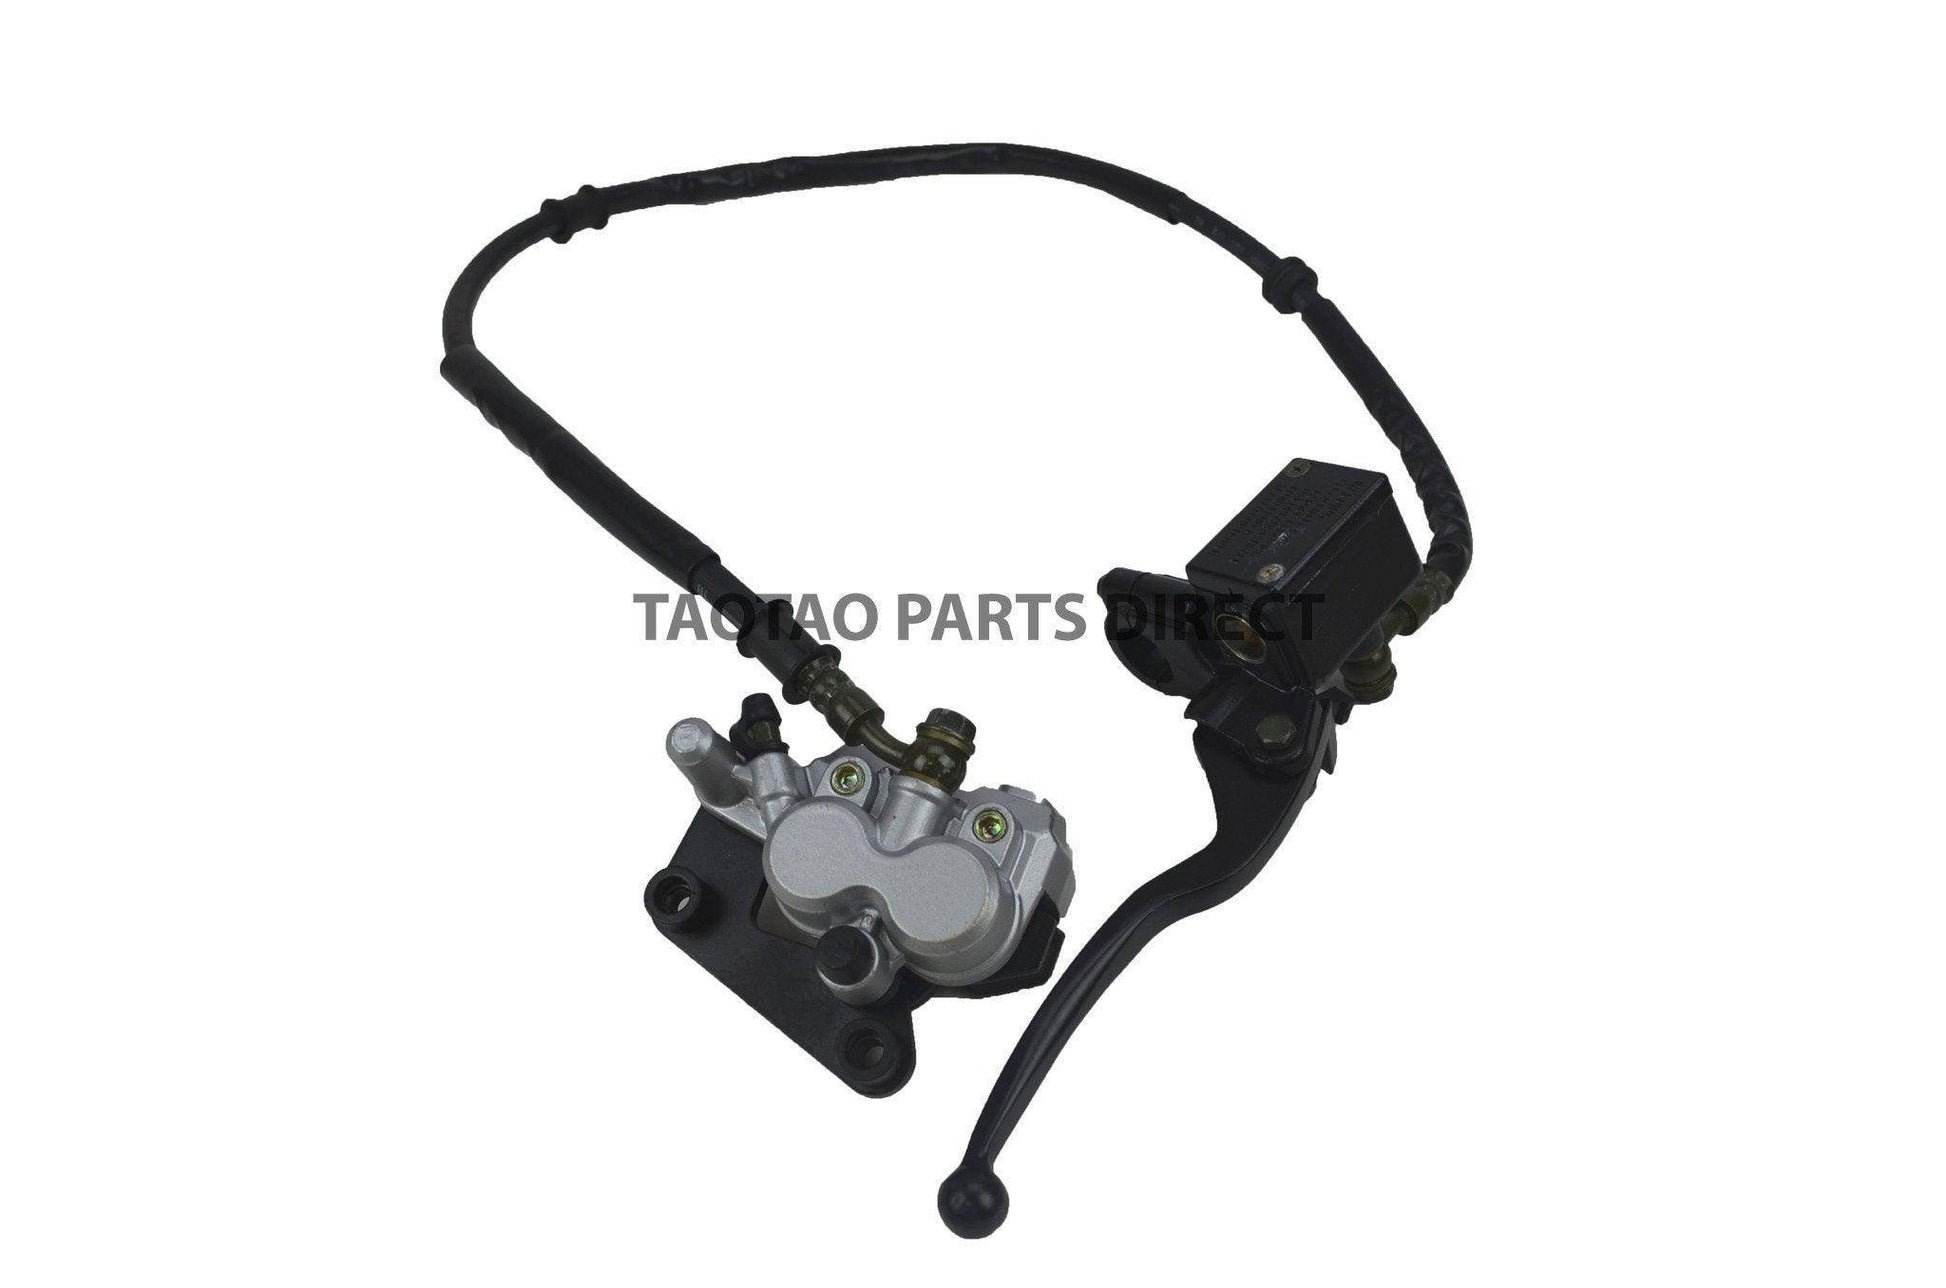 Powermax 150 Front Brake - TaoTao Parts Direct